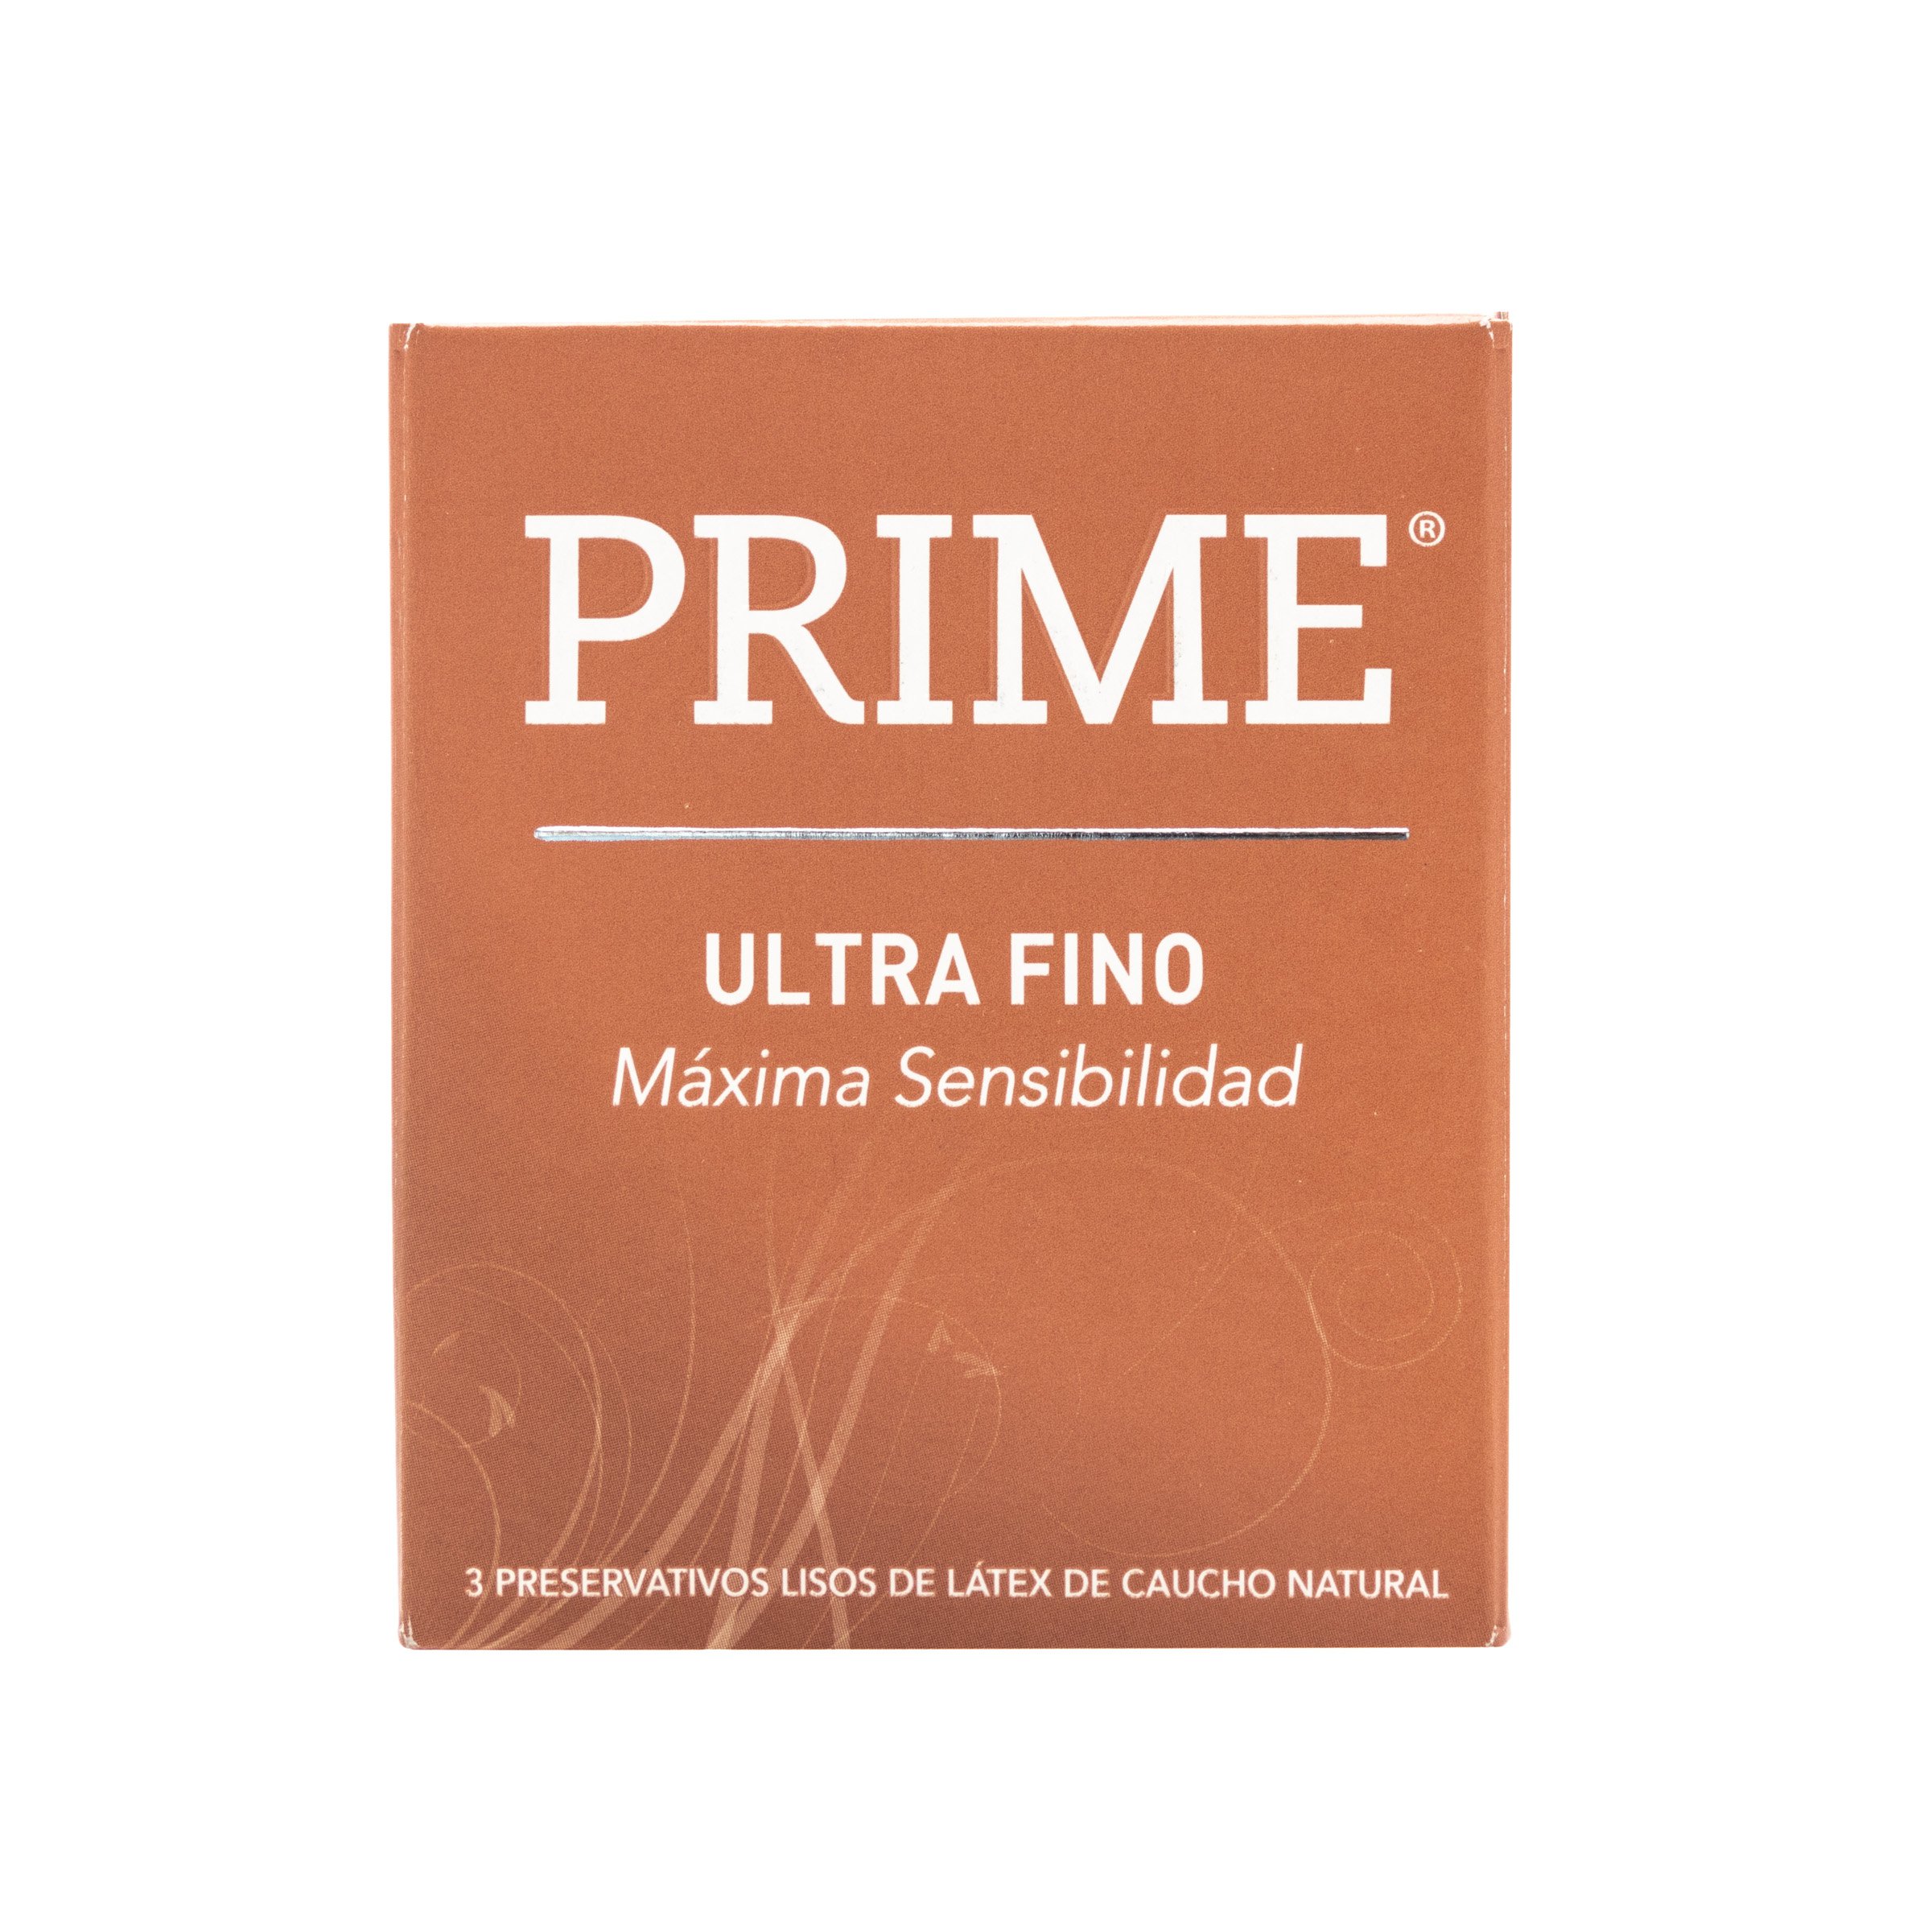 PRIME PRESERV X 3 ULTRAFINO 1061